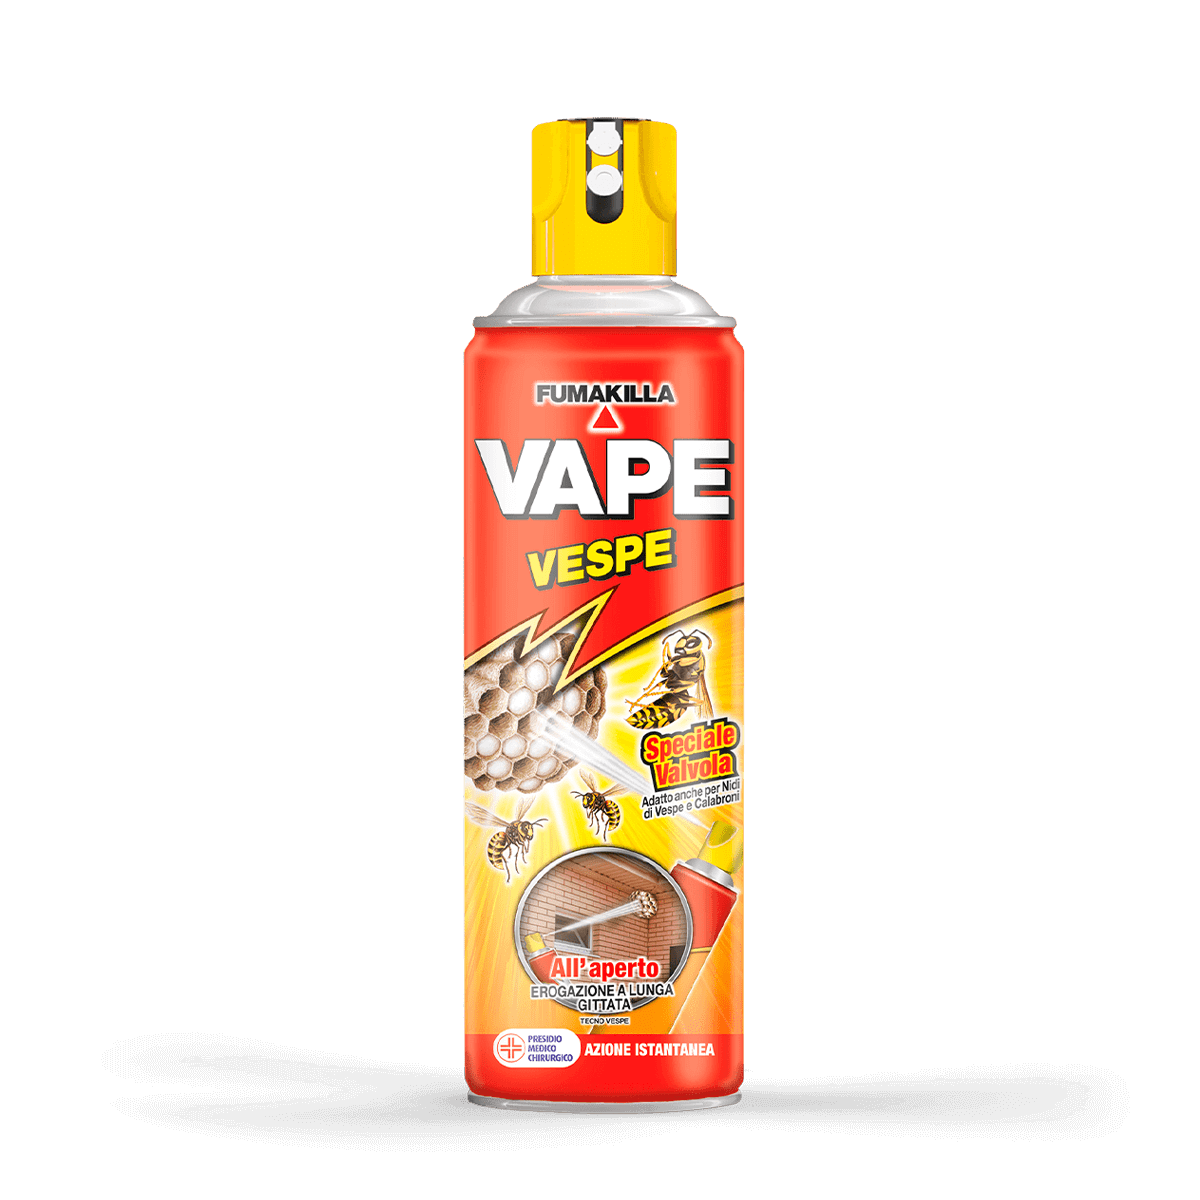 Vape Vespe Spray